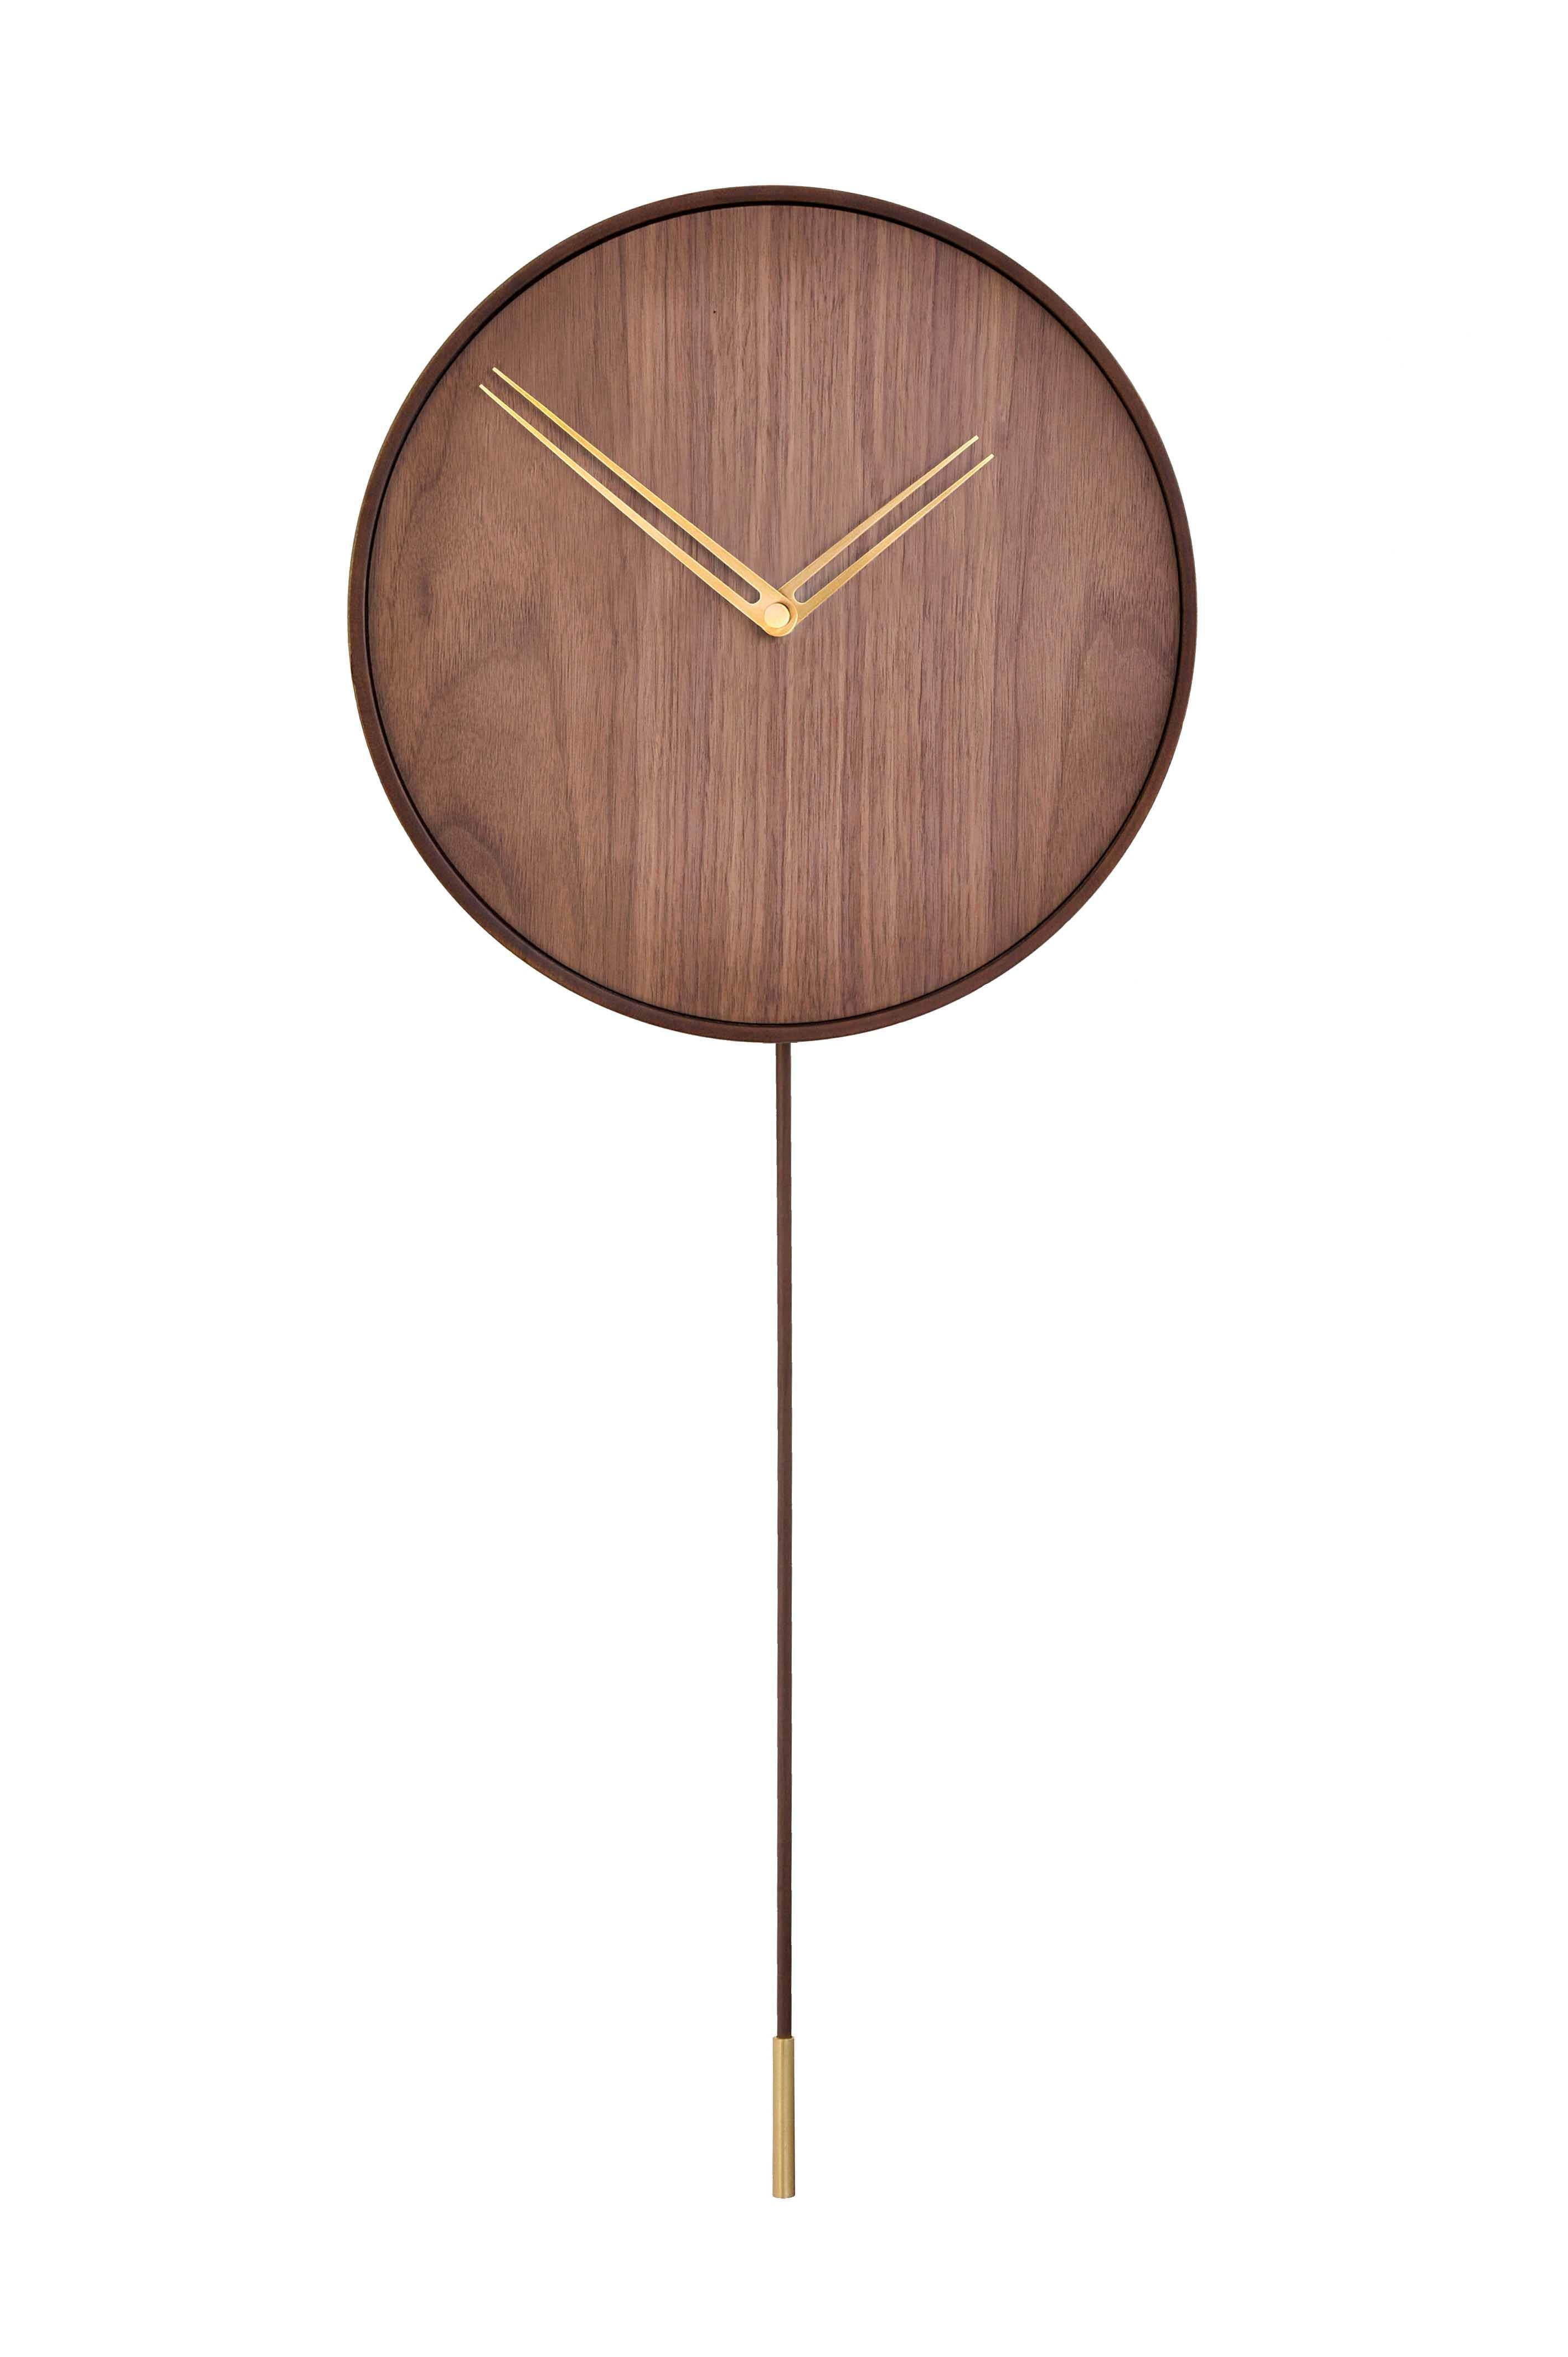 Zu den modischen und avantgardistischen Uhren der Marke Nomon gehört auch die Swing G Wall Clock. Er hat ein innovatives Design mit dunklen Nussbaumtönen und Goldnadeln. Sie ist Teil der Collection'S Gold N, die sich durch die Eleganz des Hauses